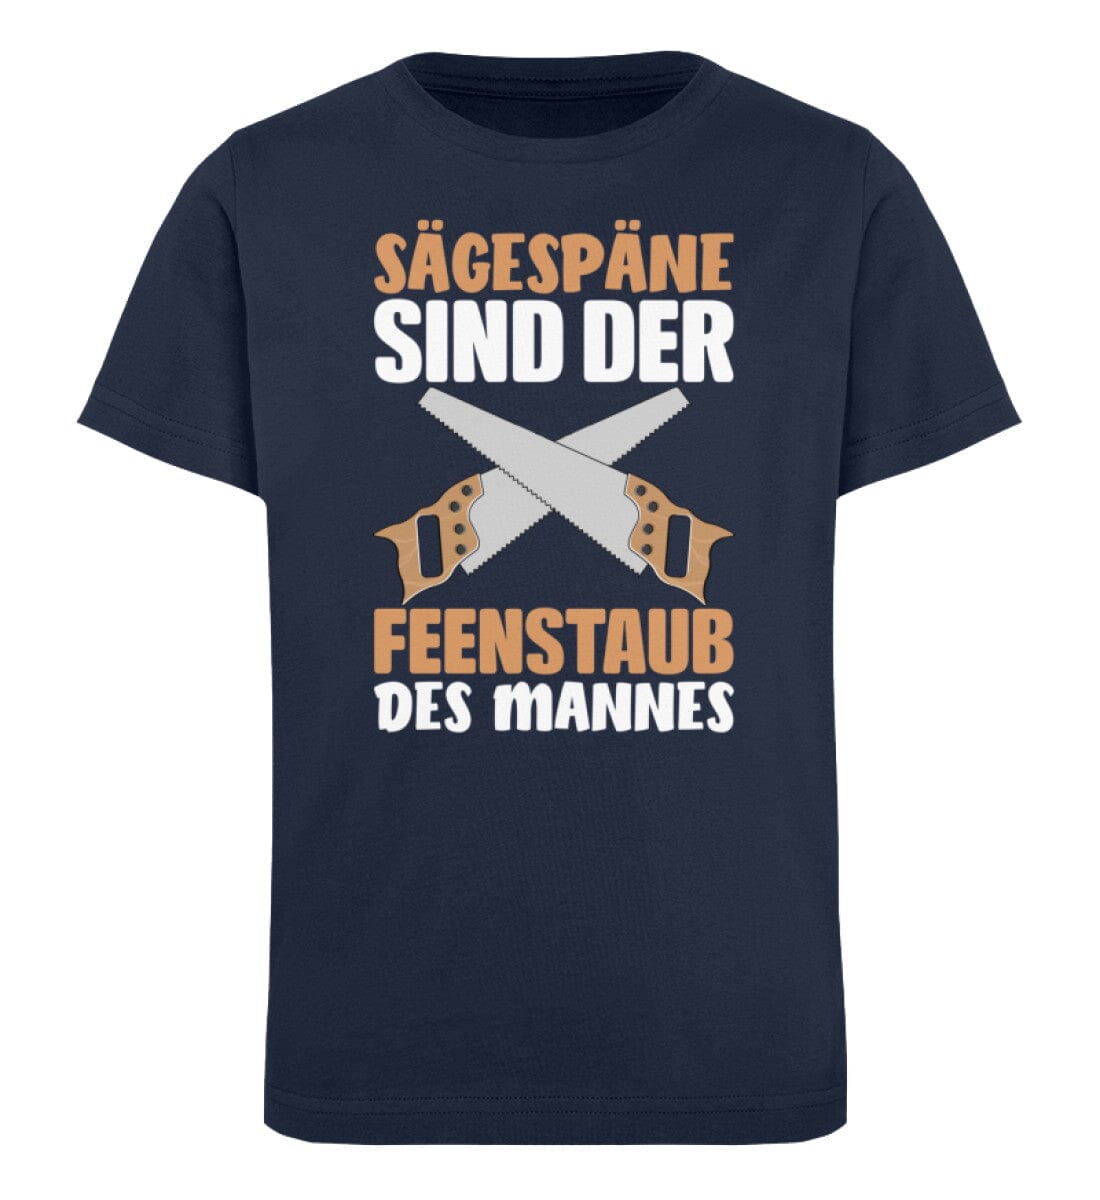 SÄGESPÄNE SIND DER FEENSTAUB DES MANNES - Kinder Bio Shirt French Navy 12/14 (152/164) 